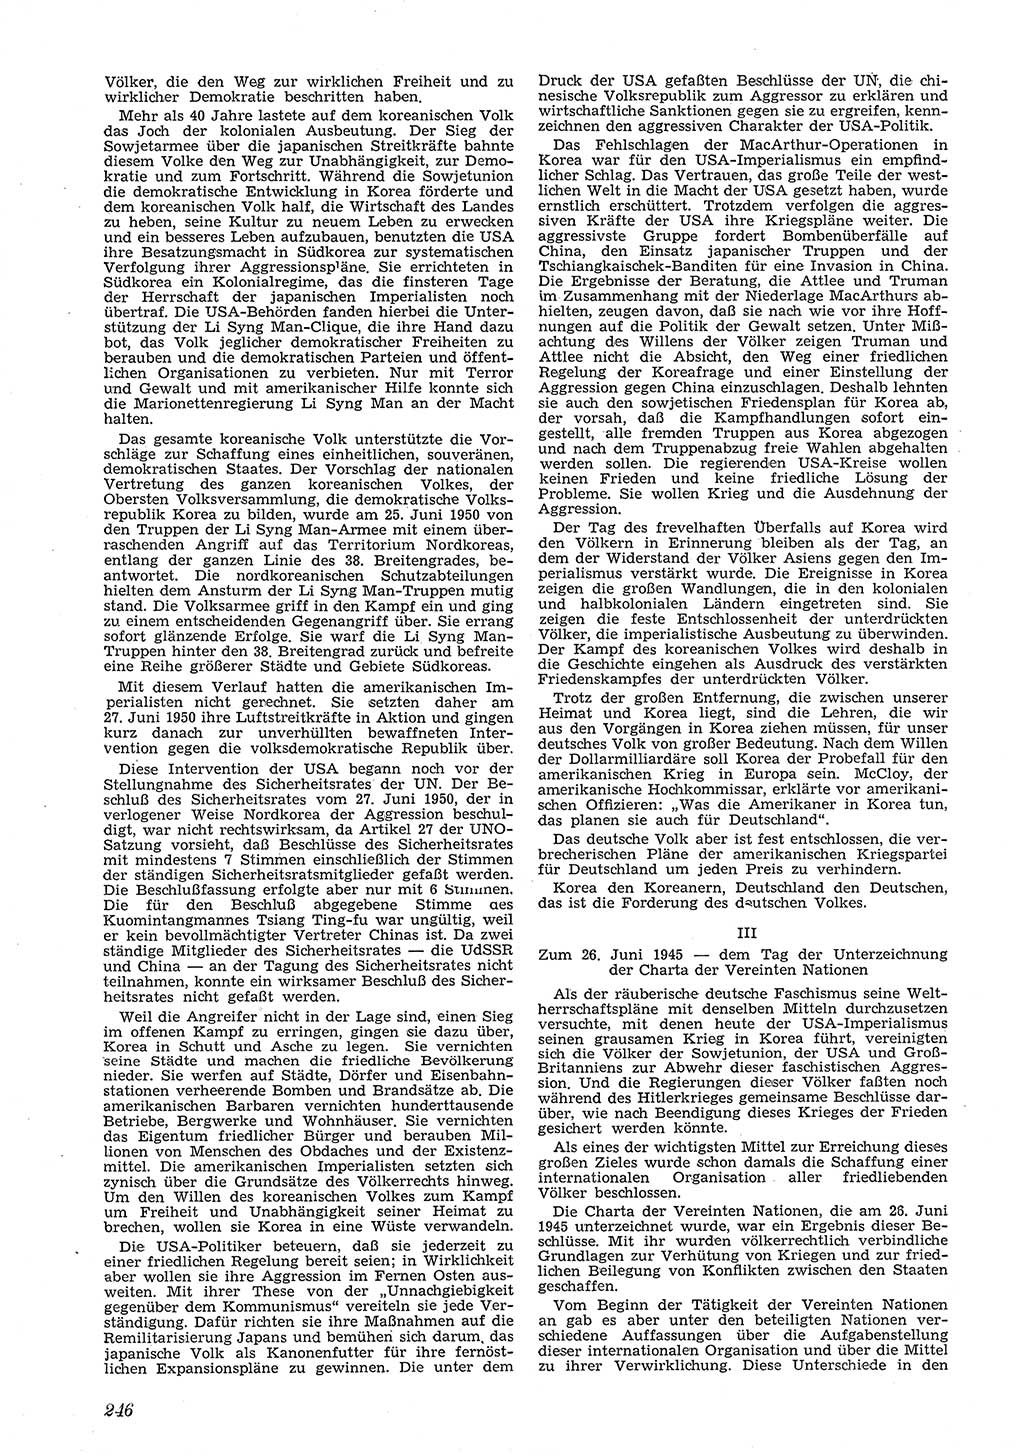 Neue Justiz (NJ), Zeitschrift für Recht und Rechtswissenschaft [Deutsche Demokratische Republik (DDR)], 5. Jahrgang 1951, Seite 246 (NJ DDR 1951, S. 246)